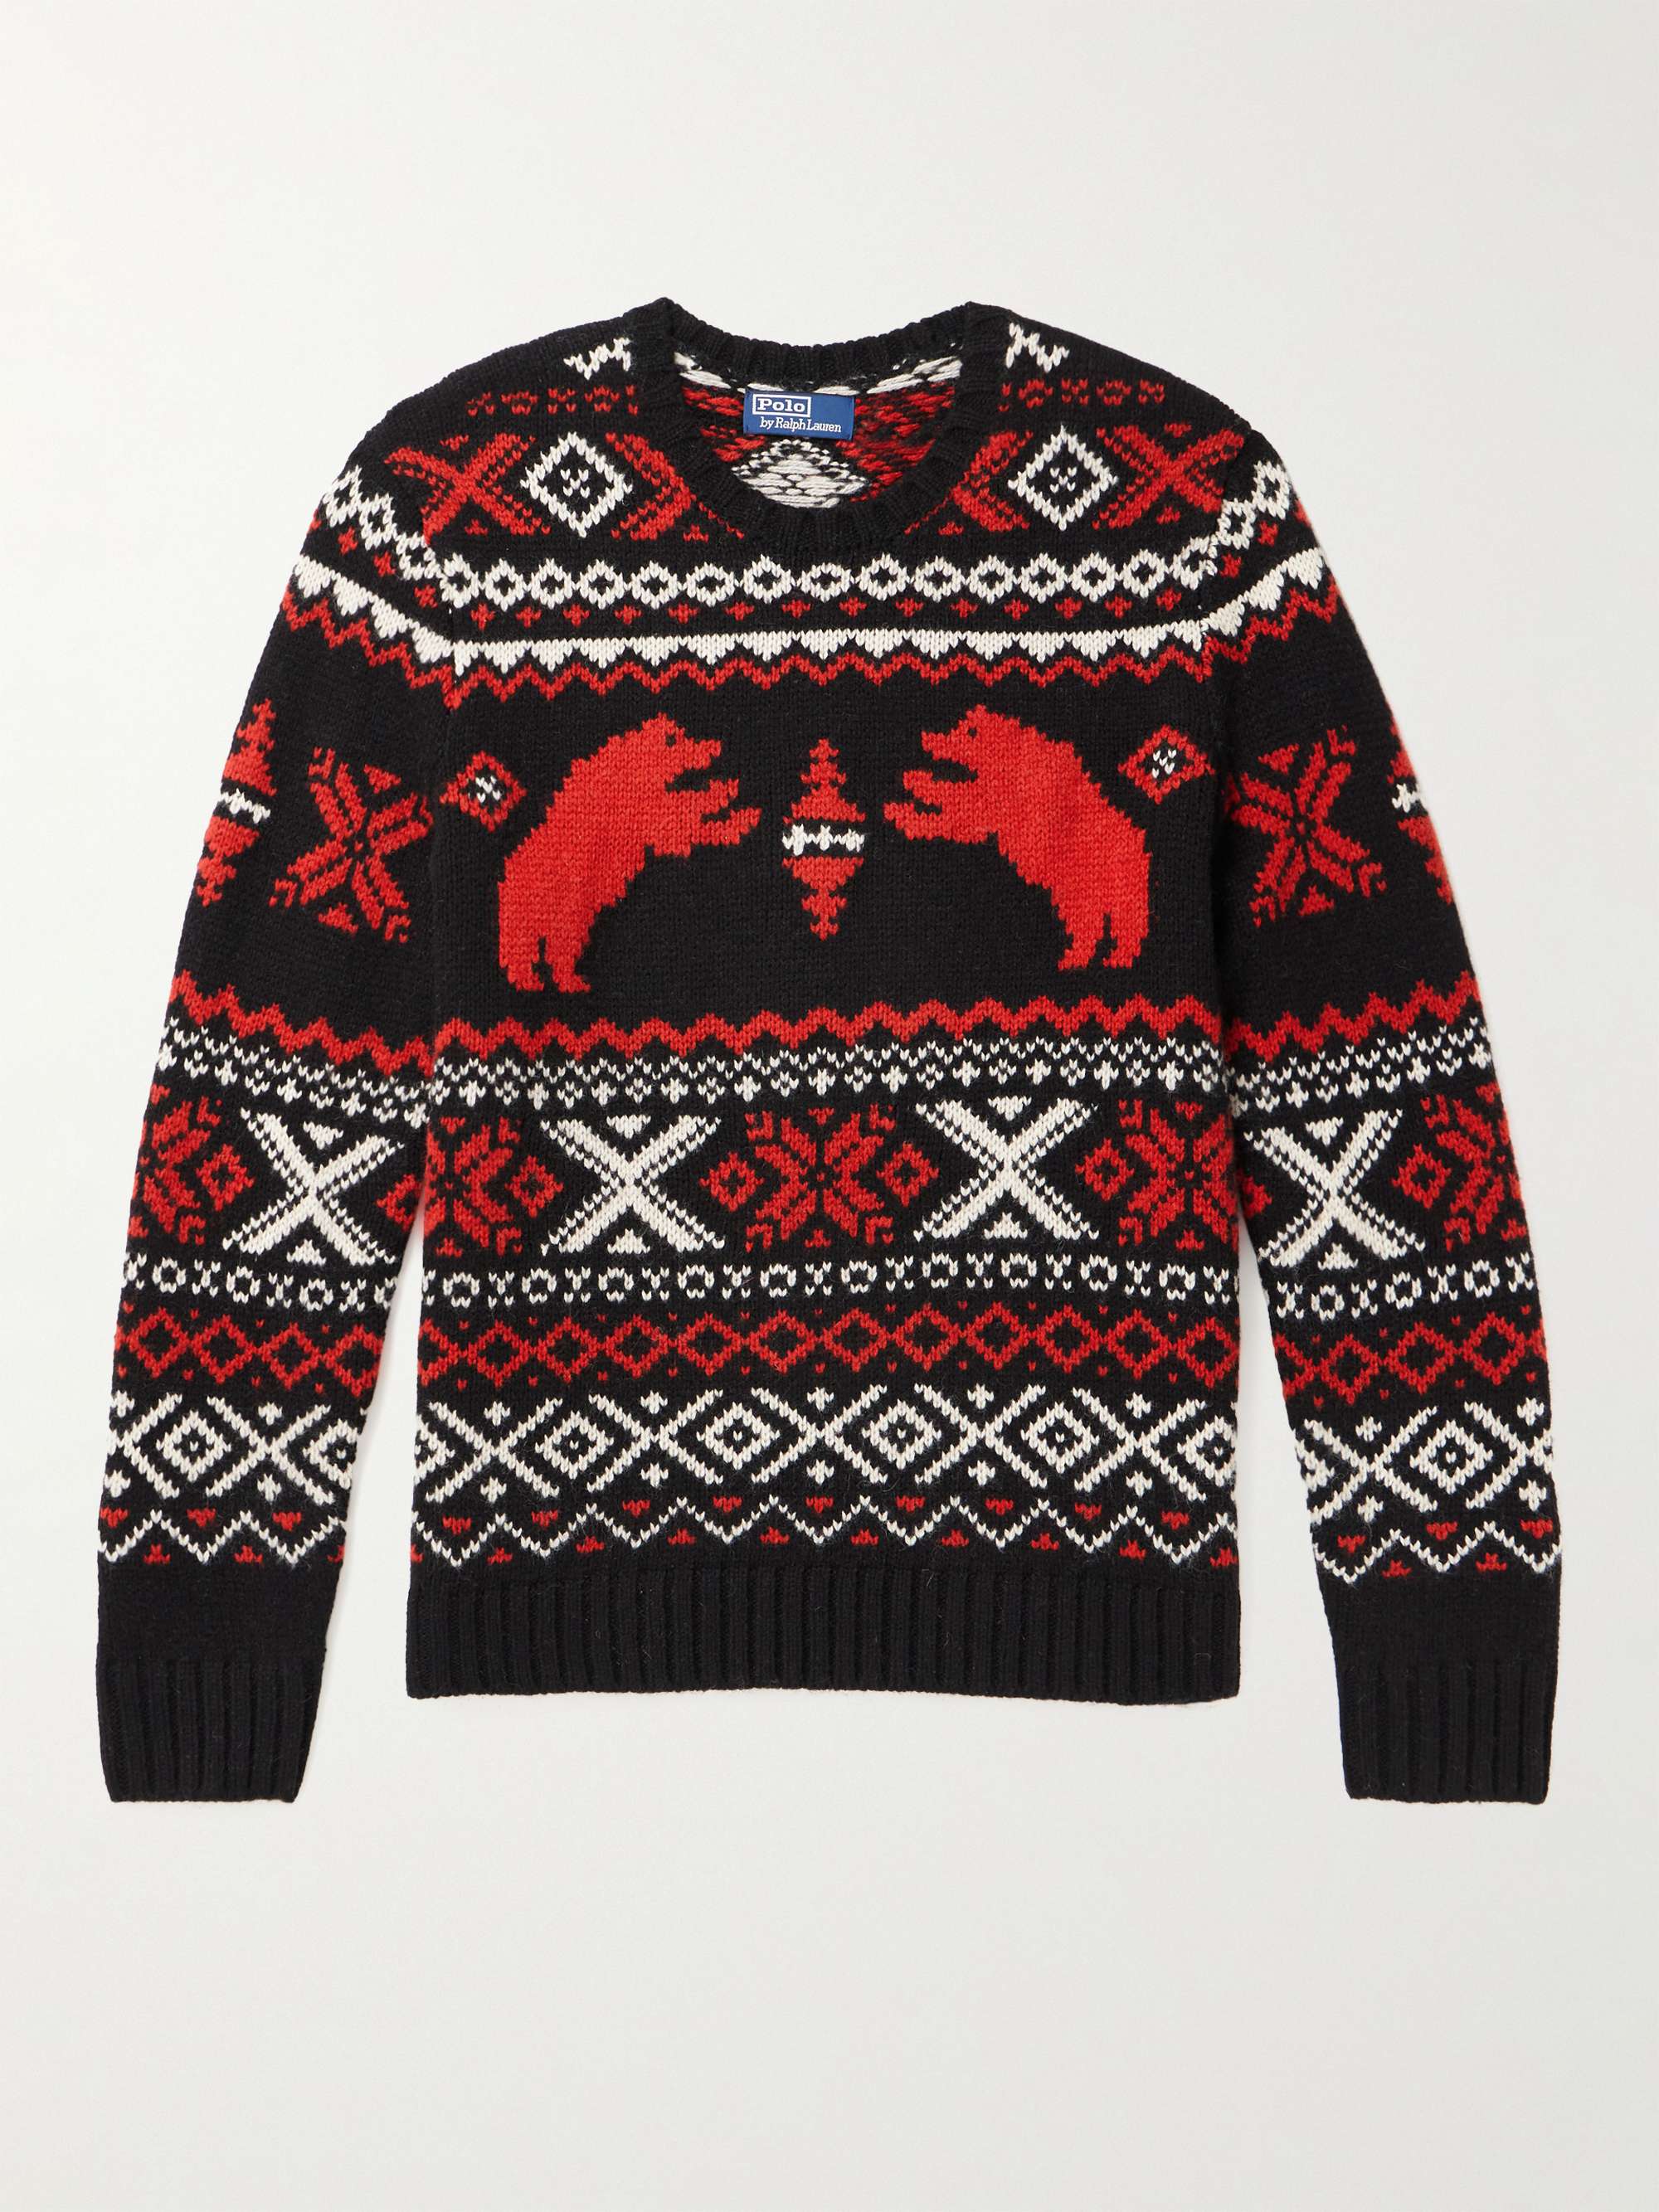 POLO RALPH LAUREN Fair Isle Wool Sweater for Men | MR PORTER